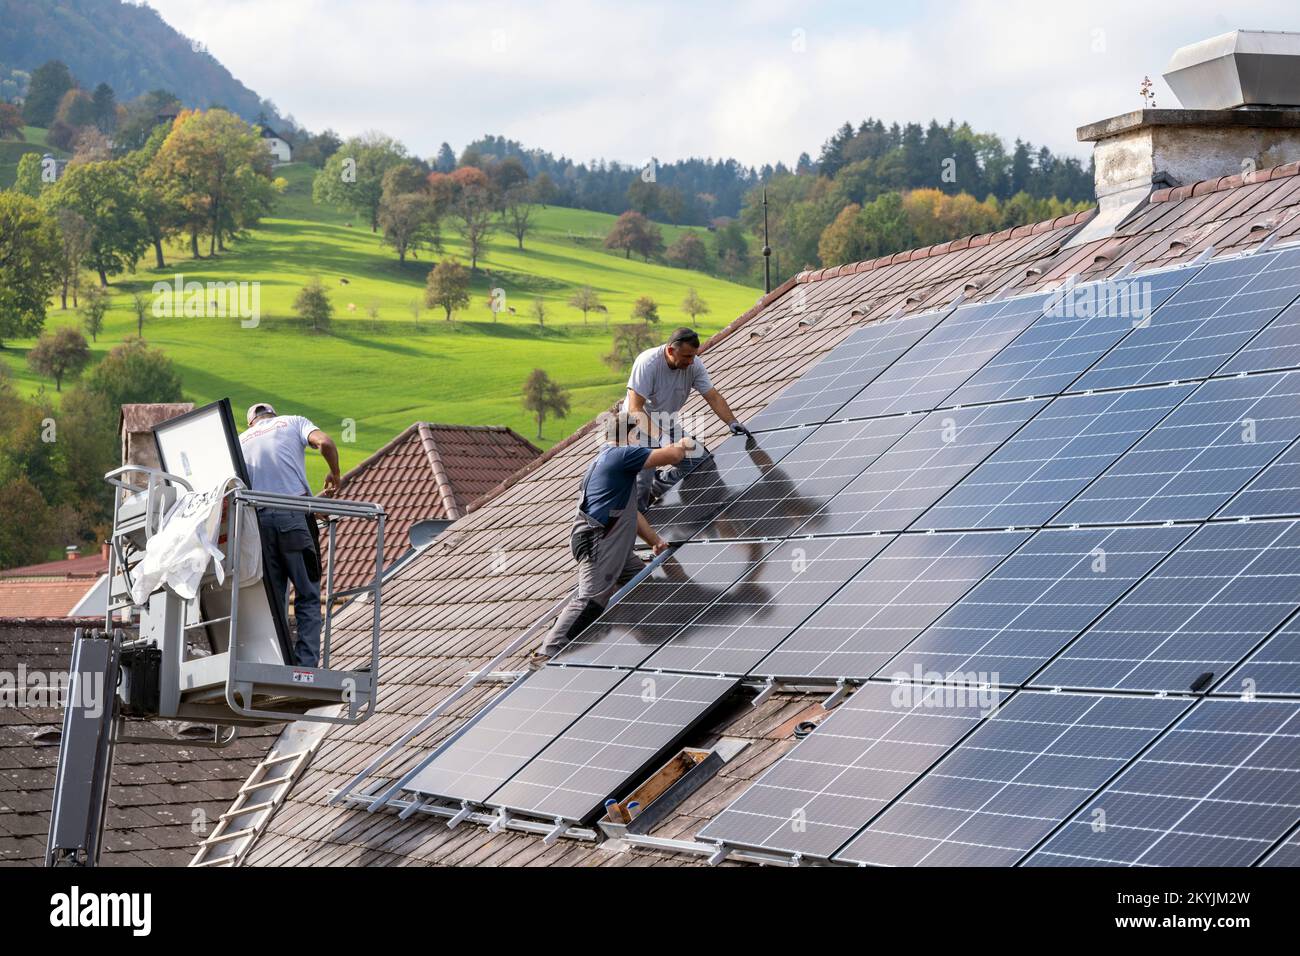 Österreich, Scheibbs, Montage von Solarpanelen auf einem Hausdach Stock Photo